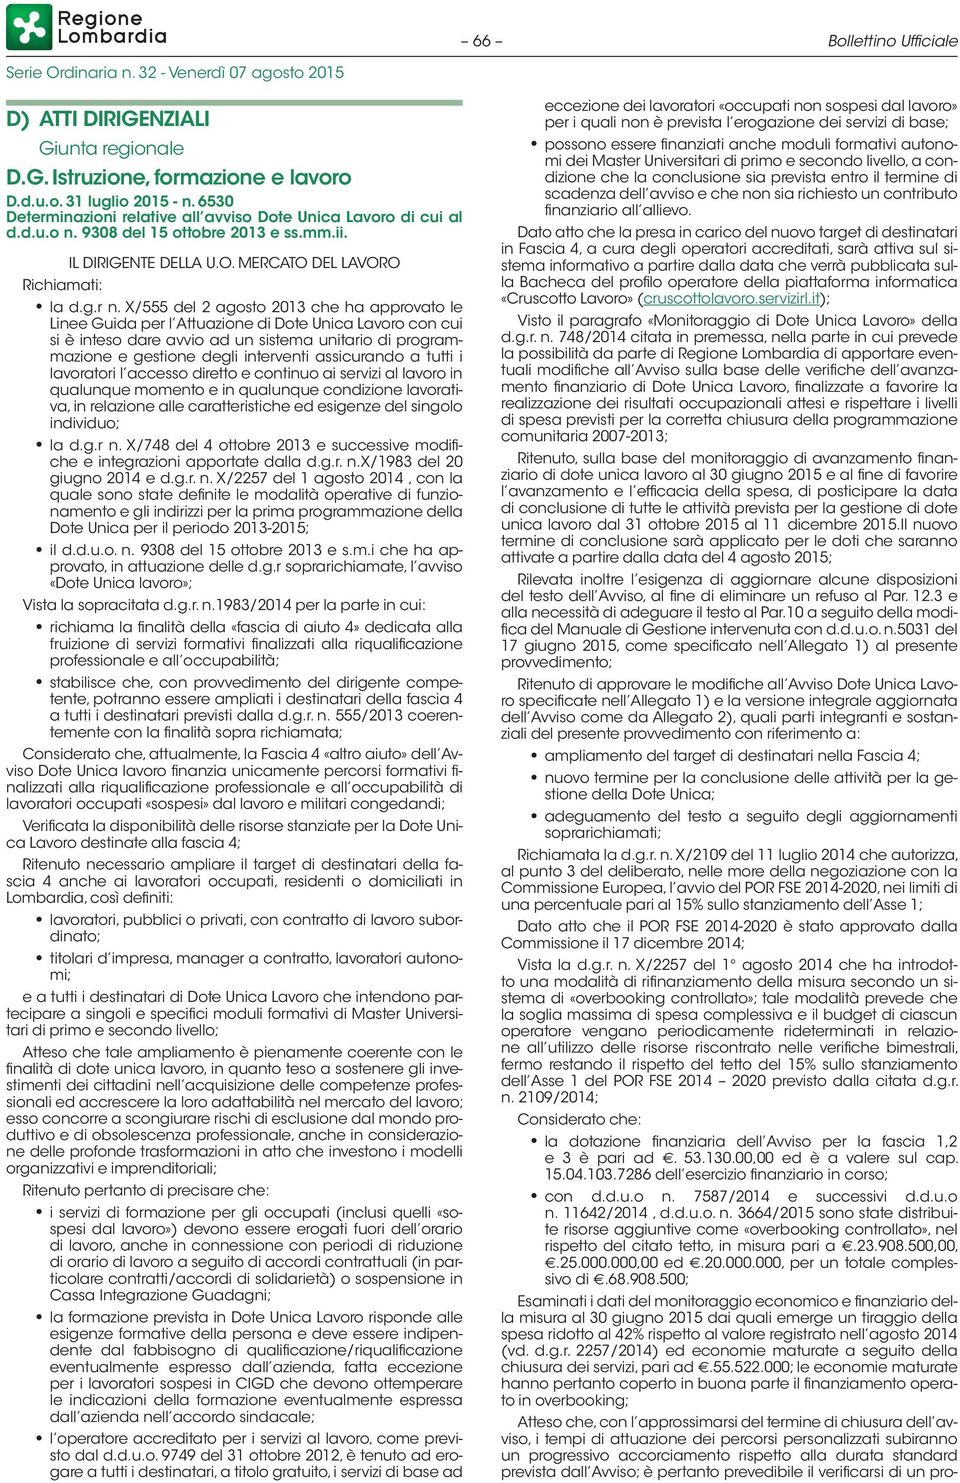 X/555 del 2 agosto 2013 che ha approvato le Linee Guida per l Attuazione di Dote Unica Lavoro con cui si è inteso dare avvio ad un sistema unitario di programmazione e gestione degli interventi